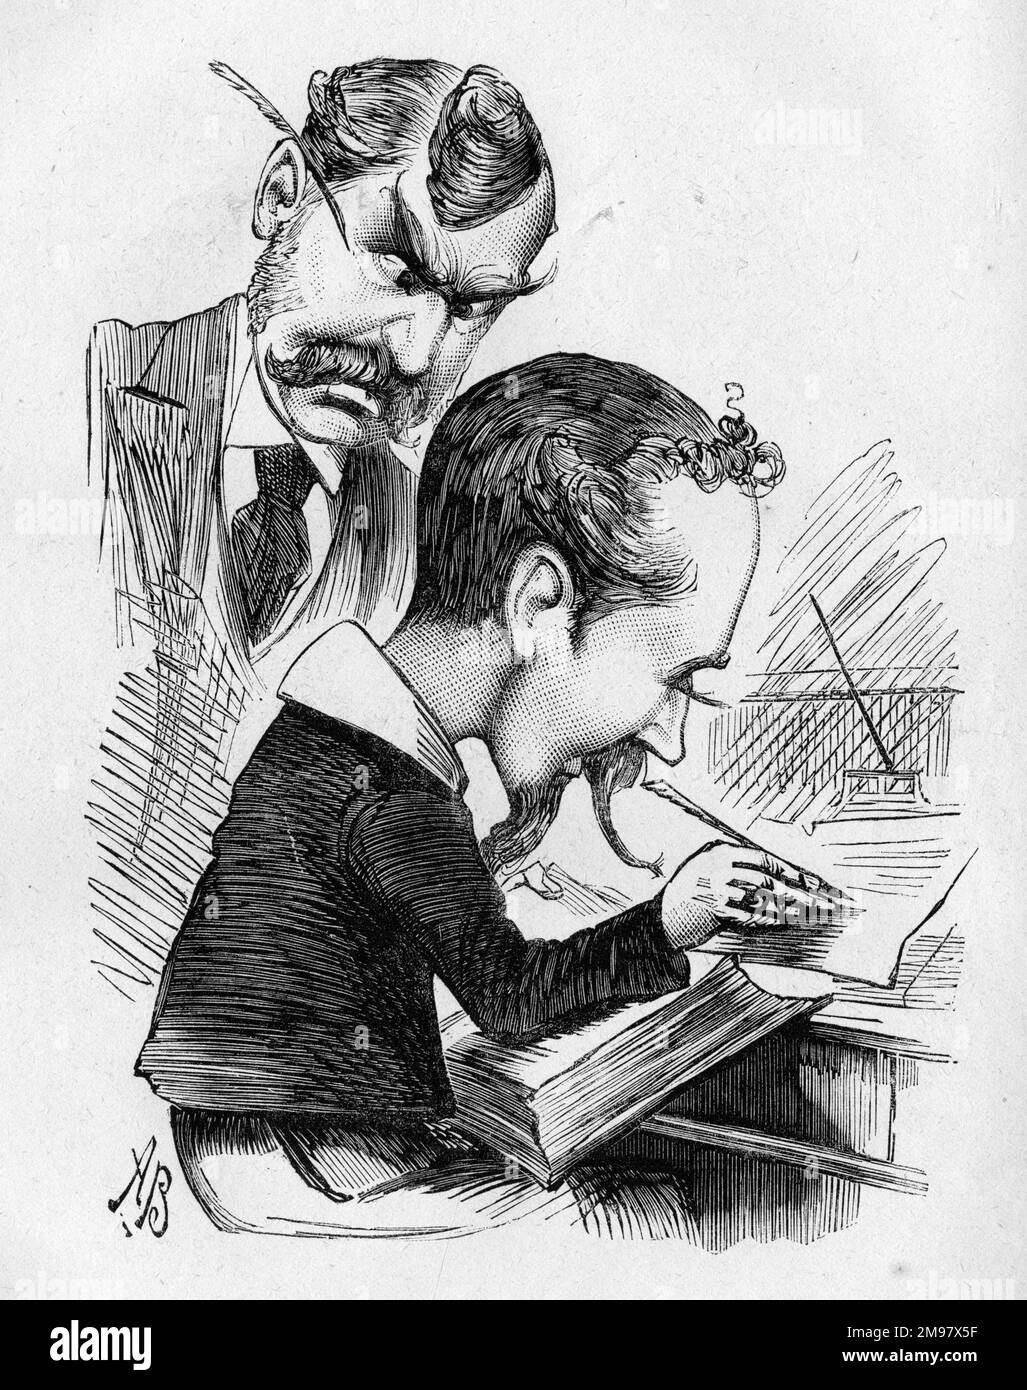 Cartoon, W S Gilbert (1836-1911) e Henry Pottinger Stephens (1851-1903), drammaturghi inglesi. Gilbert, sotto forma di maestro di scuola, dice del giovane: "Sono più benefatto se Pottinger Stephens non sta cercando di scrivere esattamente come me!" Foto Stock